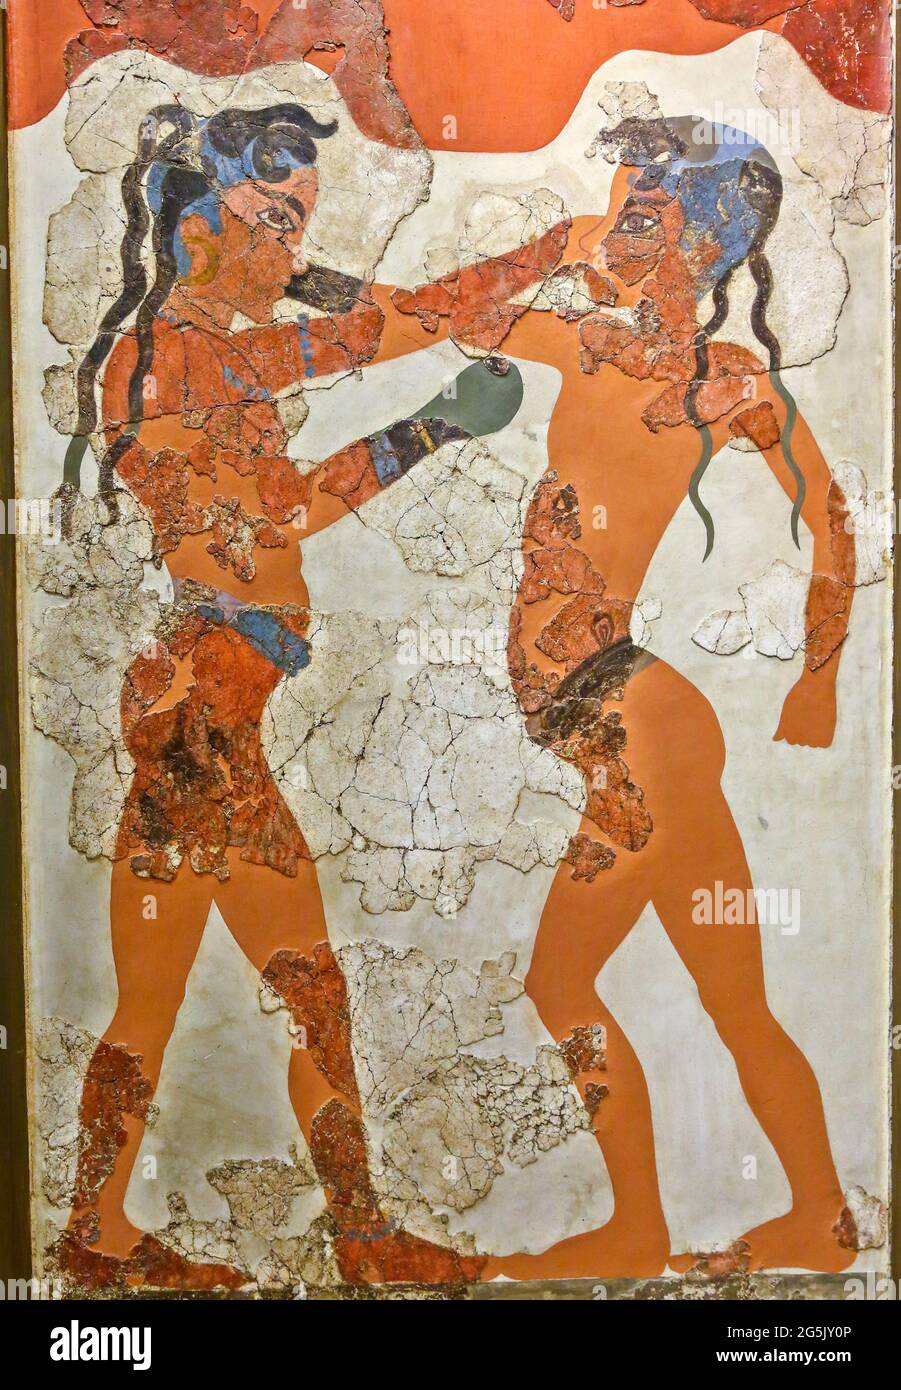 Le Akrotiri Boxer Fresco, excellent échantillon de peinture Minoan, trouvé dans l'excavation d'Akrotiri (Santorini), représentant deux jeunes garçons avec des gants de boxe. Banque D'Images